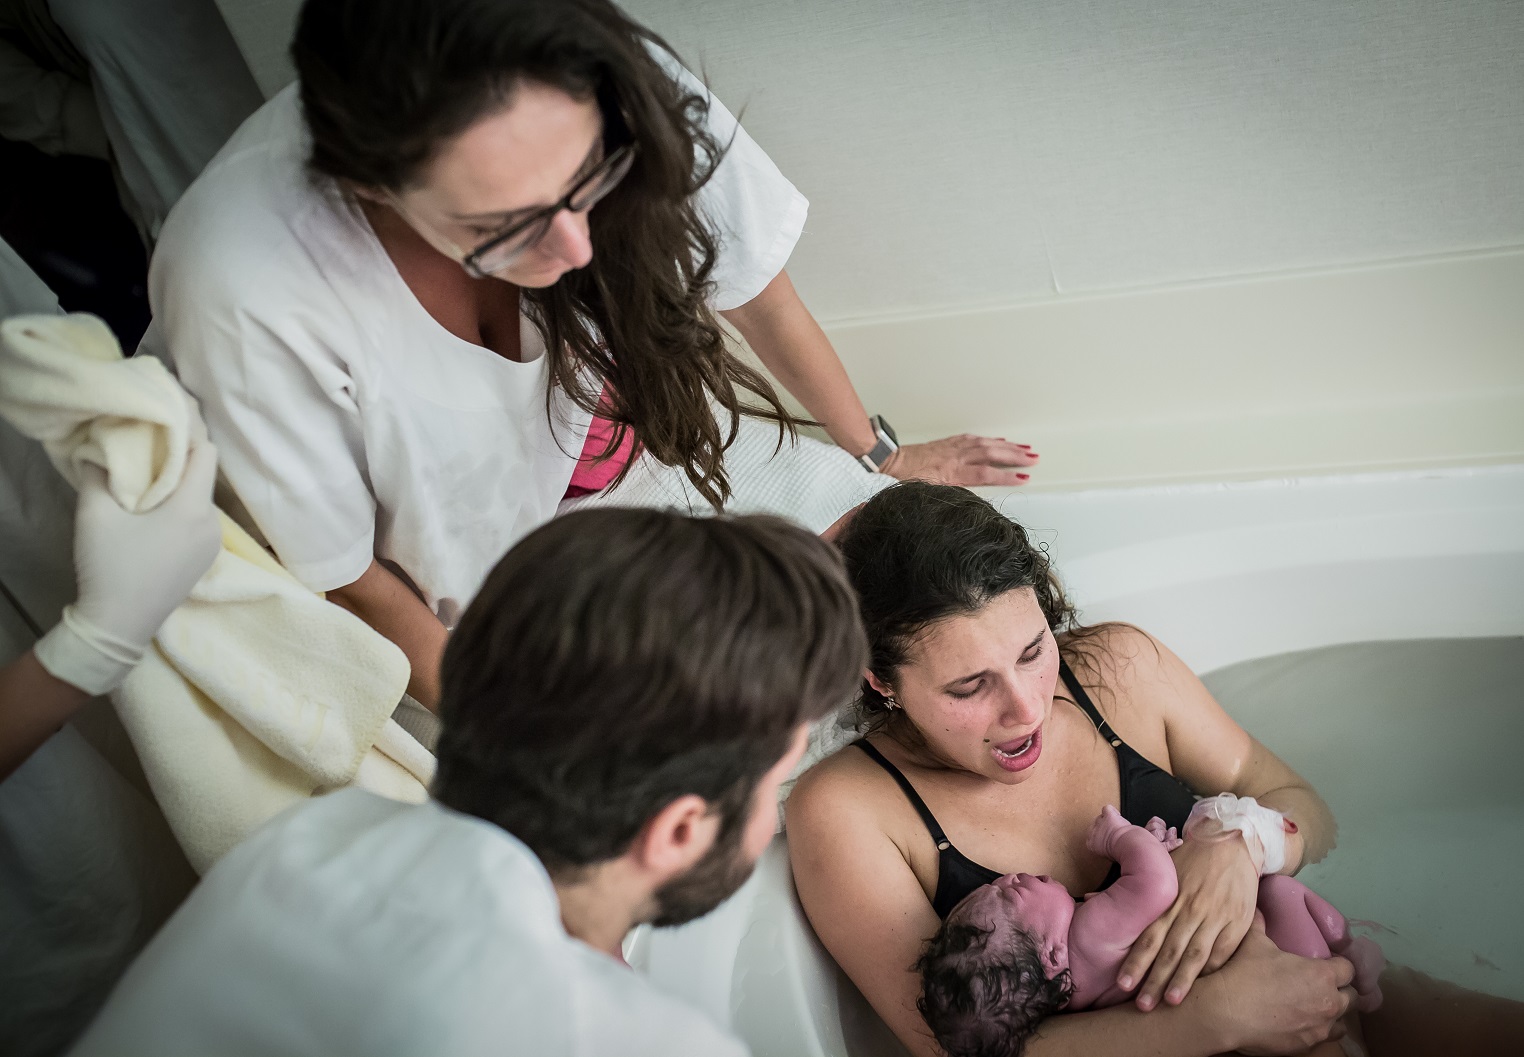 Anna Beatriz: "O parto não é um procedimento médico. O parto é um procedimento natural, fisiológico". Foto Débora Silveira